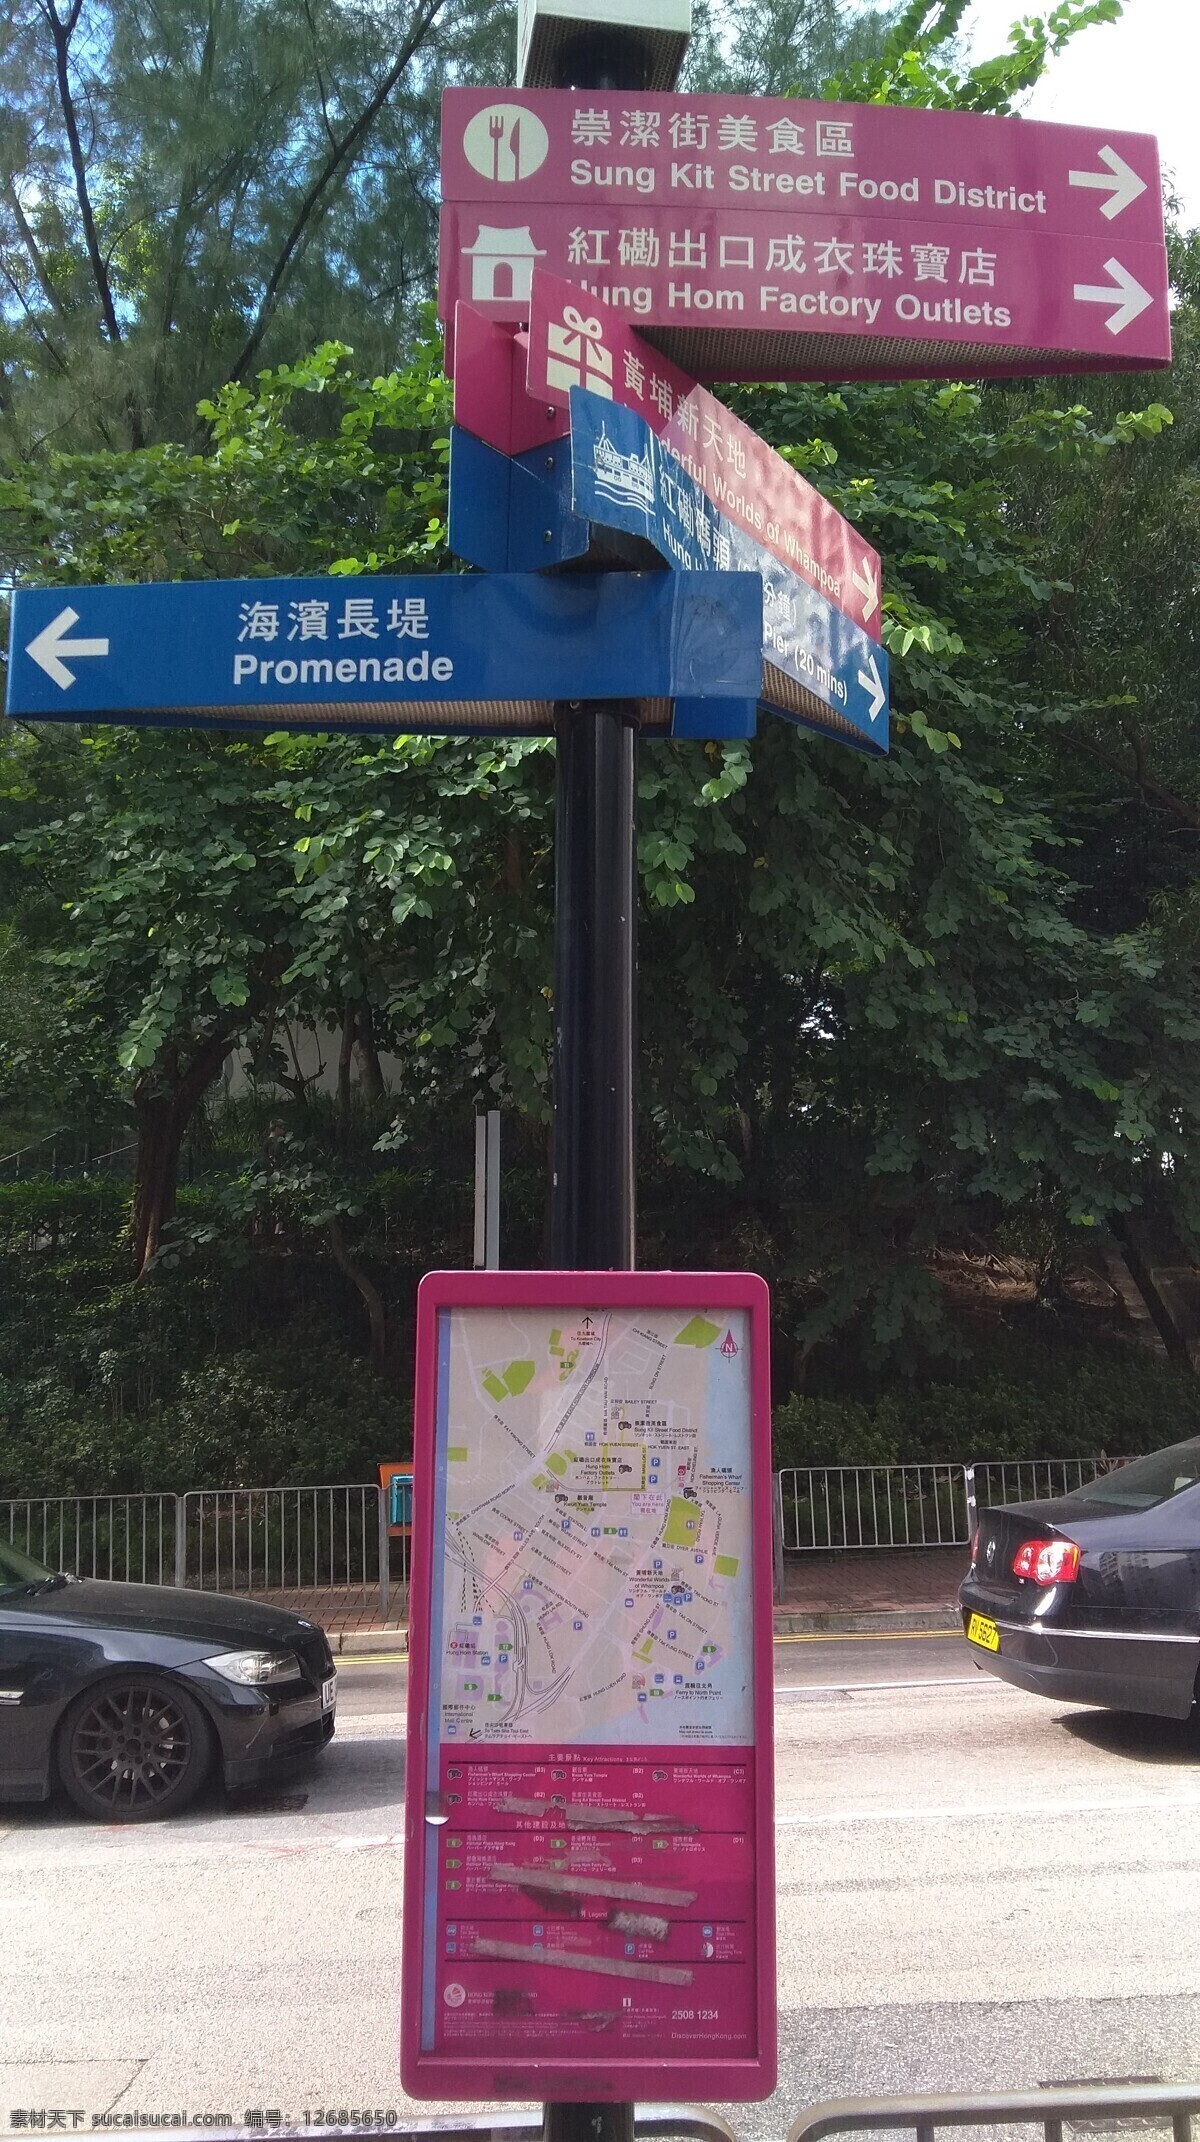 香港 香港街头导视 标识导视 标识 指示牌 路牌 方向牌 香港路边导视 香港街道导视 文化艺术